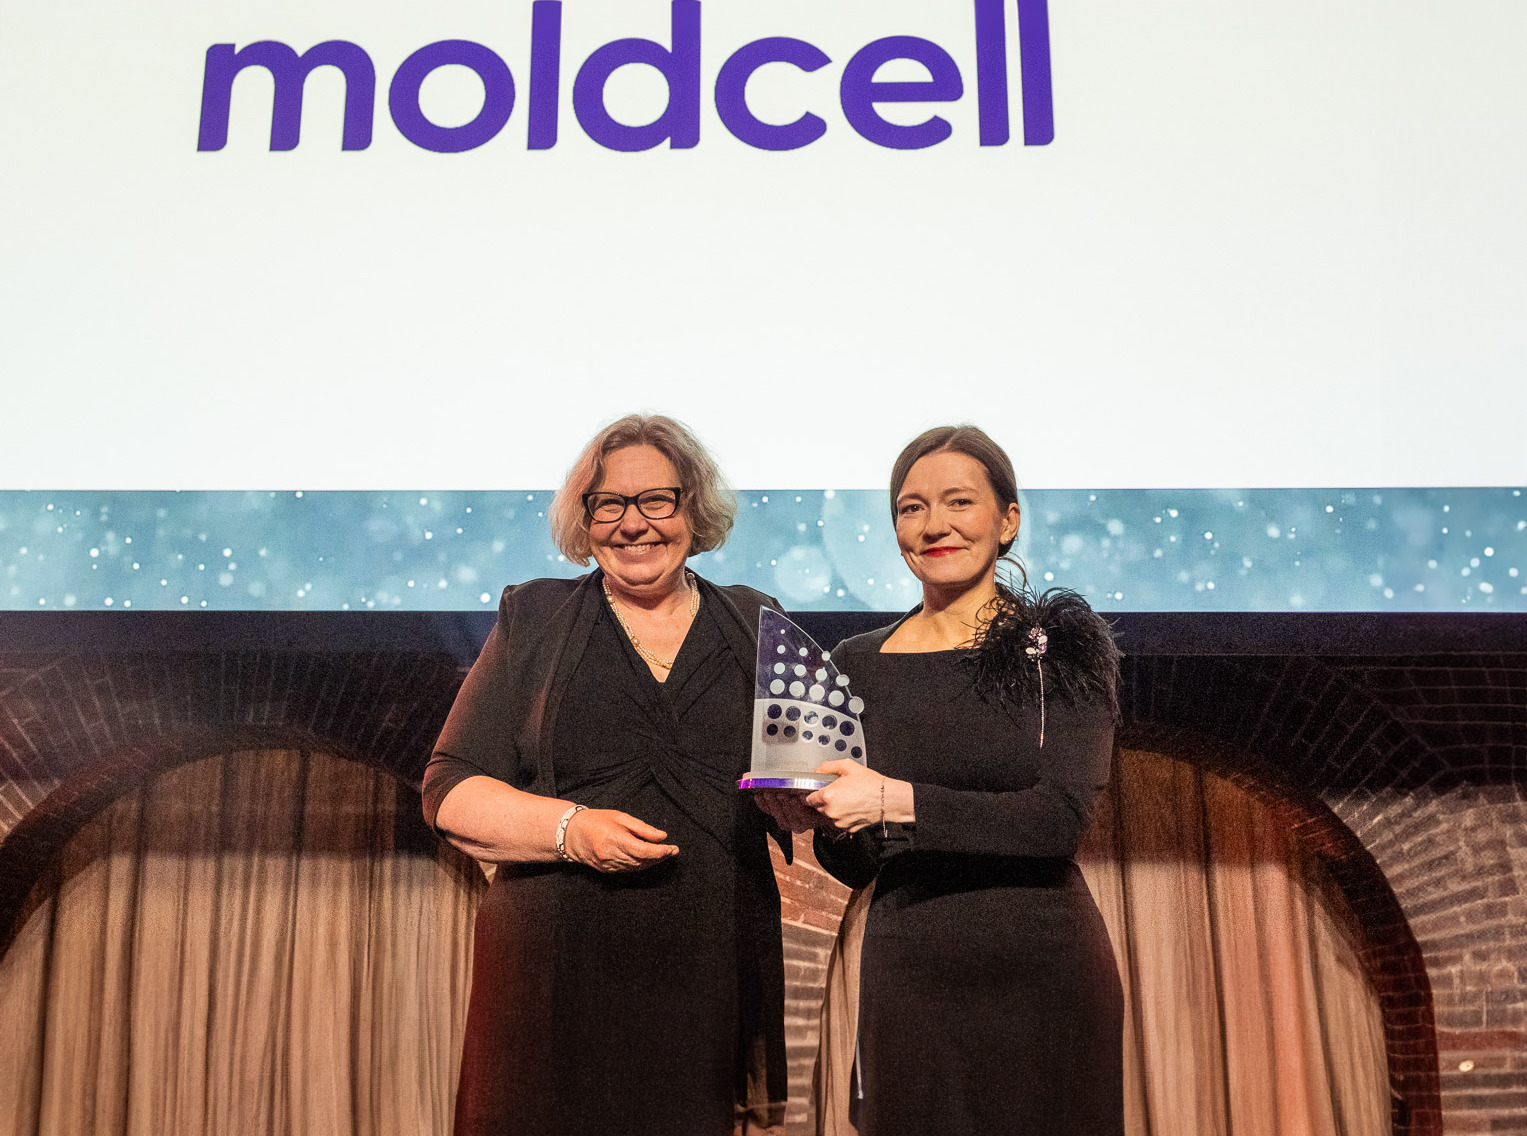 Moldcell получил в Амстердаме престижную награду World Communication в категории «Люди и культура»